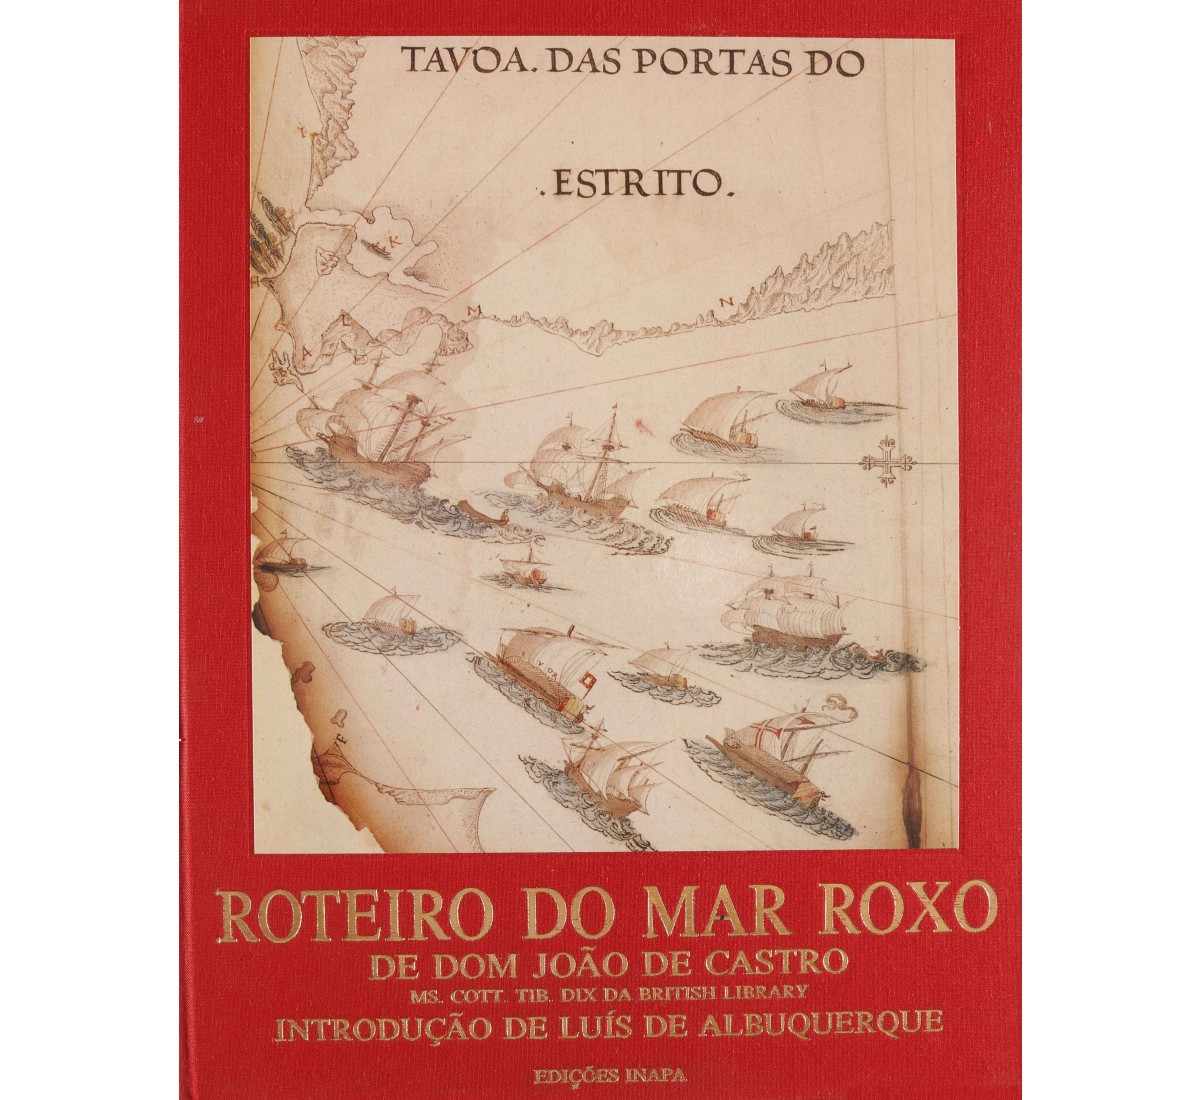 ROTEIRO DO MAR ROXO DE DOM JOÃO DE CASTRO